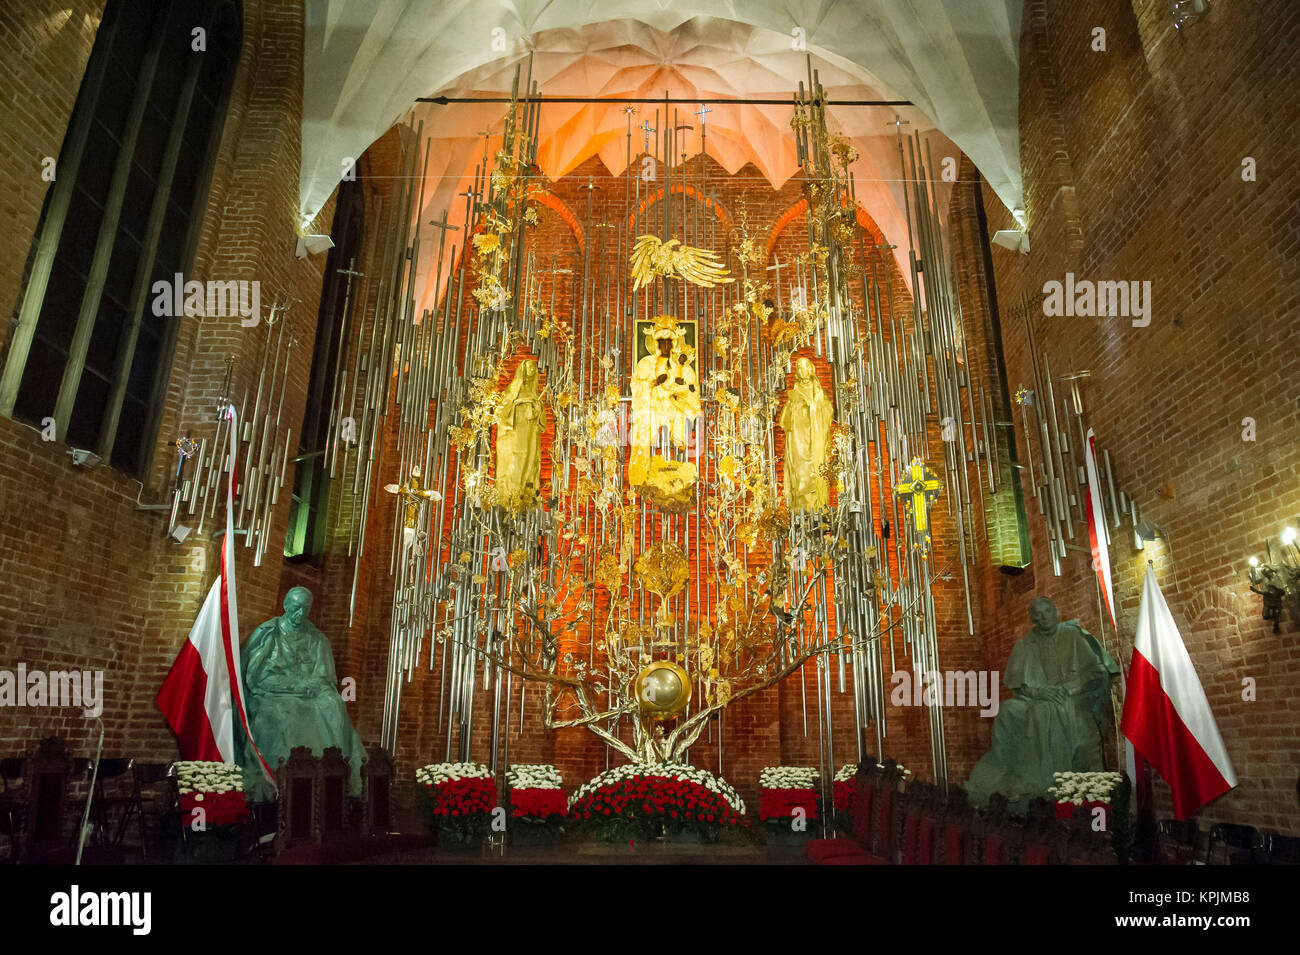 L'Ambra altare in kosciol Sw. Brygidy (St. Brigida la Chiesa) in Gdansk, Polonia, è stato ufficialmente aperto al pubblico oggi il 16 dic. 2017. L altare è la più grande struttura ambra nel mondo. Con 13 m di altezza e 120 m2 di area è molto più grande e tre volte superiore alla più grande struttura color ambra per questo tempo - la famosa Sala Ambra © Wojciech Strozyk / Alamy Live News Foto Stock